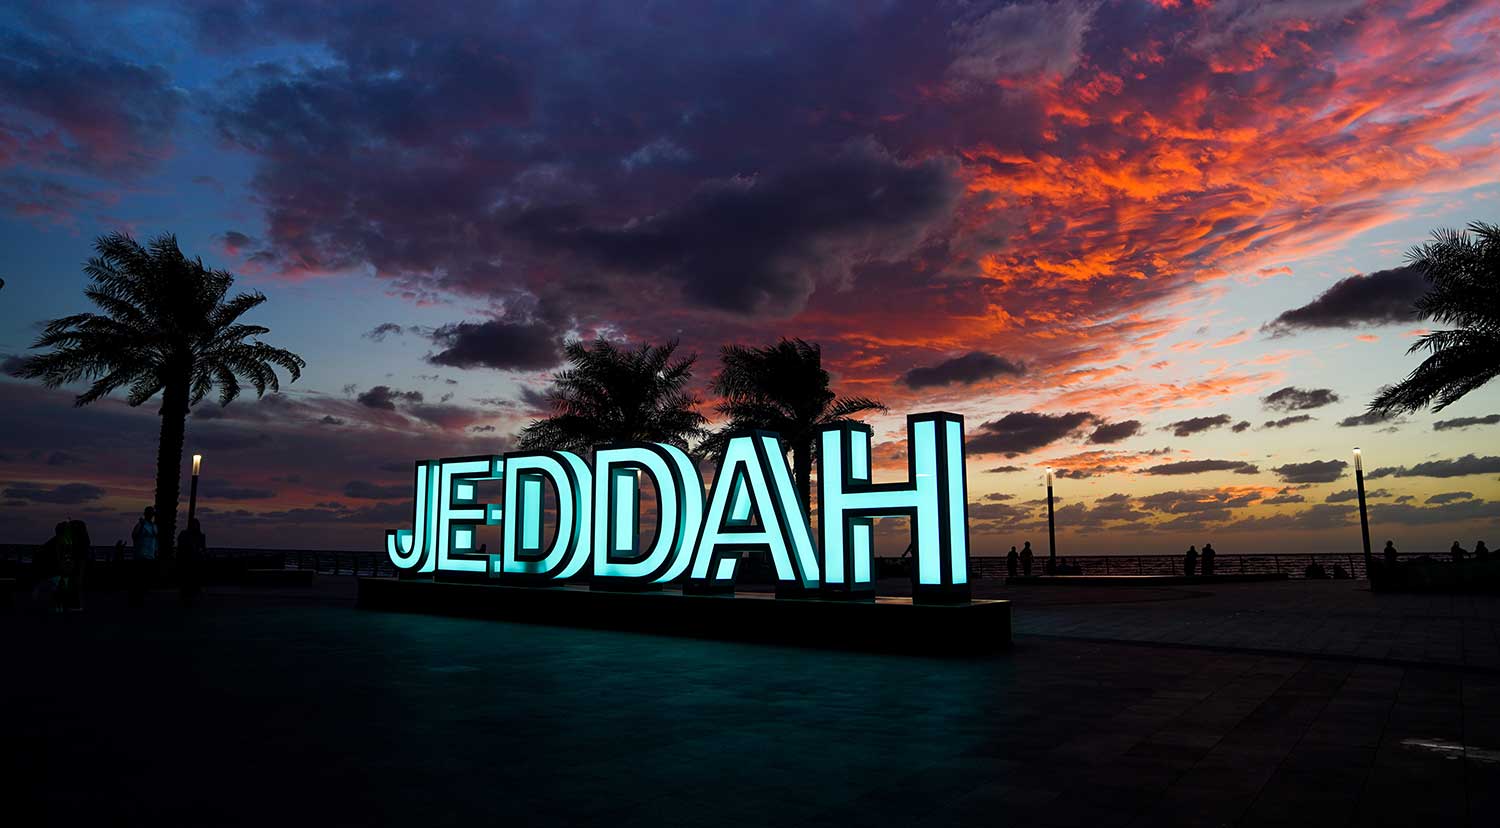 Sunset in Jeddah (Image: Shutterstock)